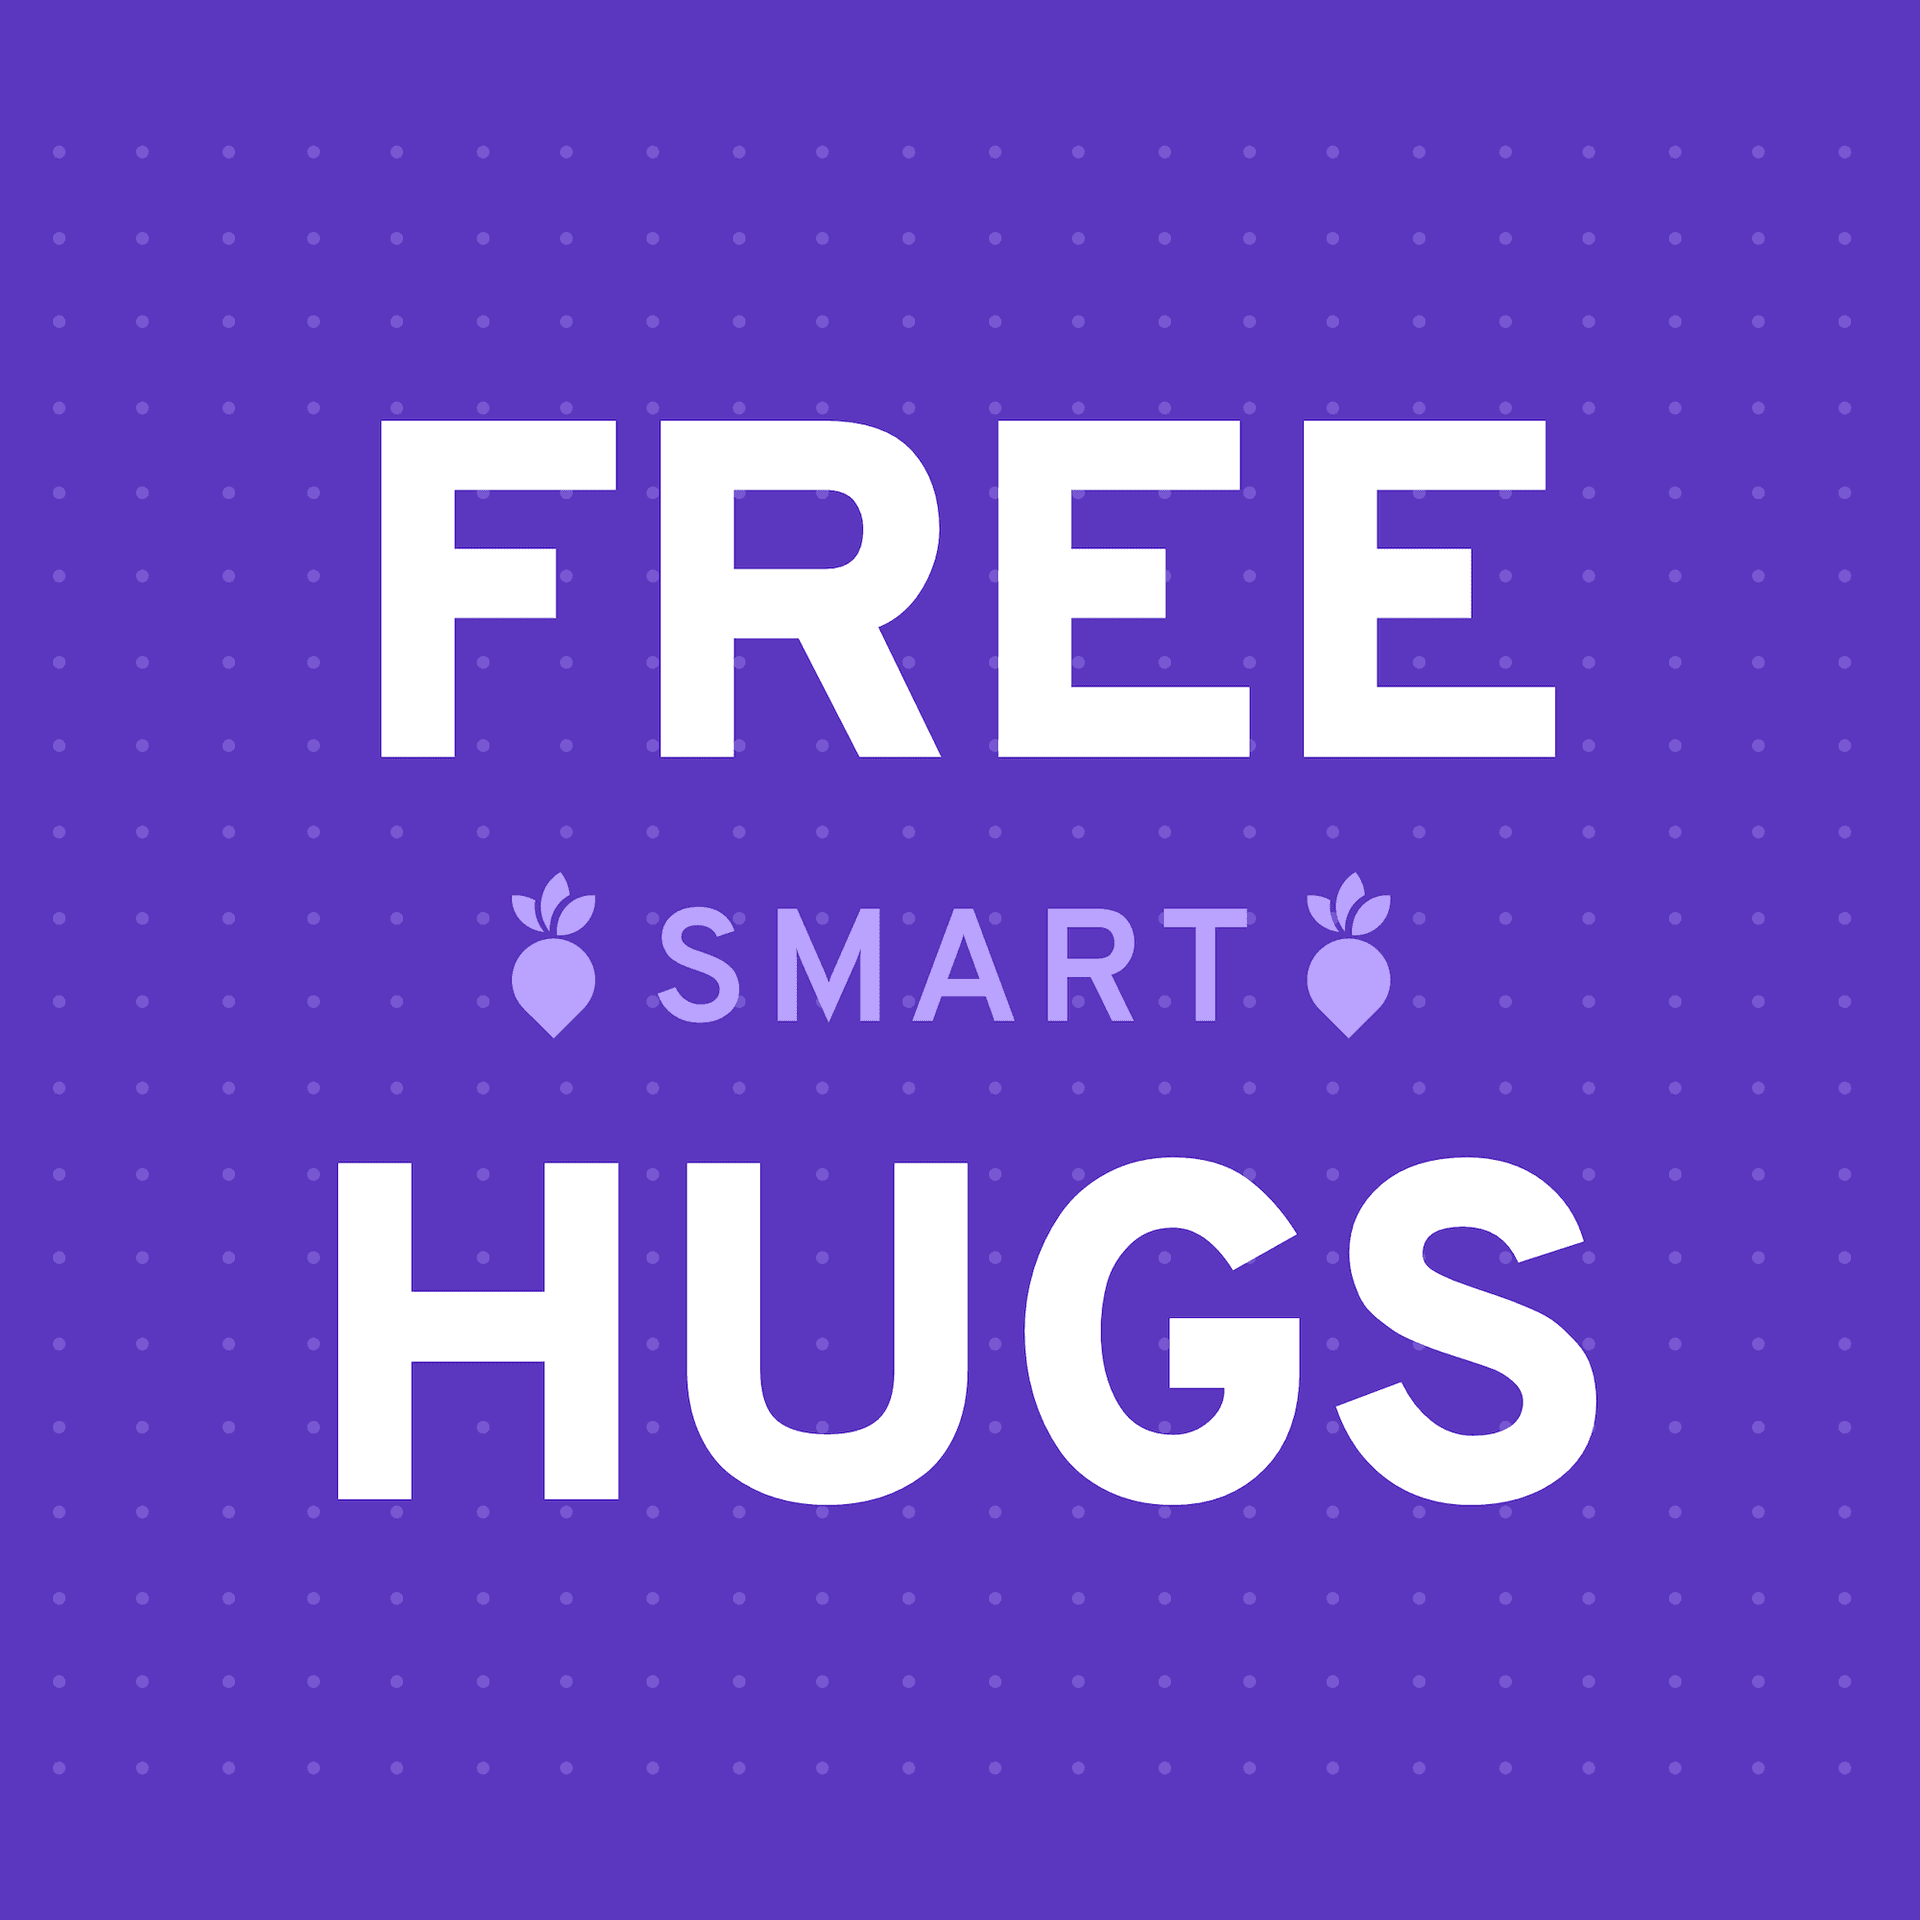 Free smart hugs by Wunder